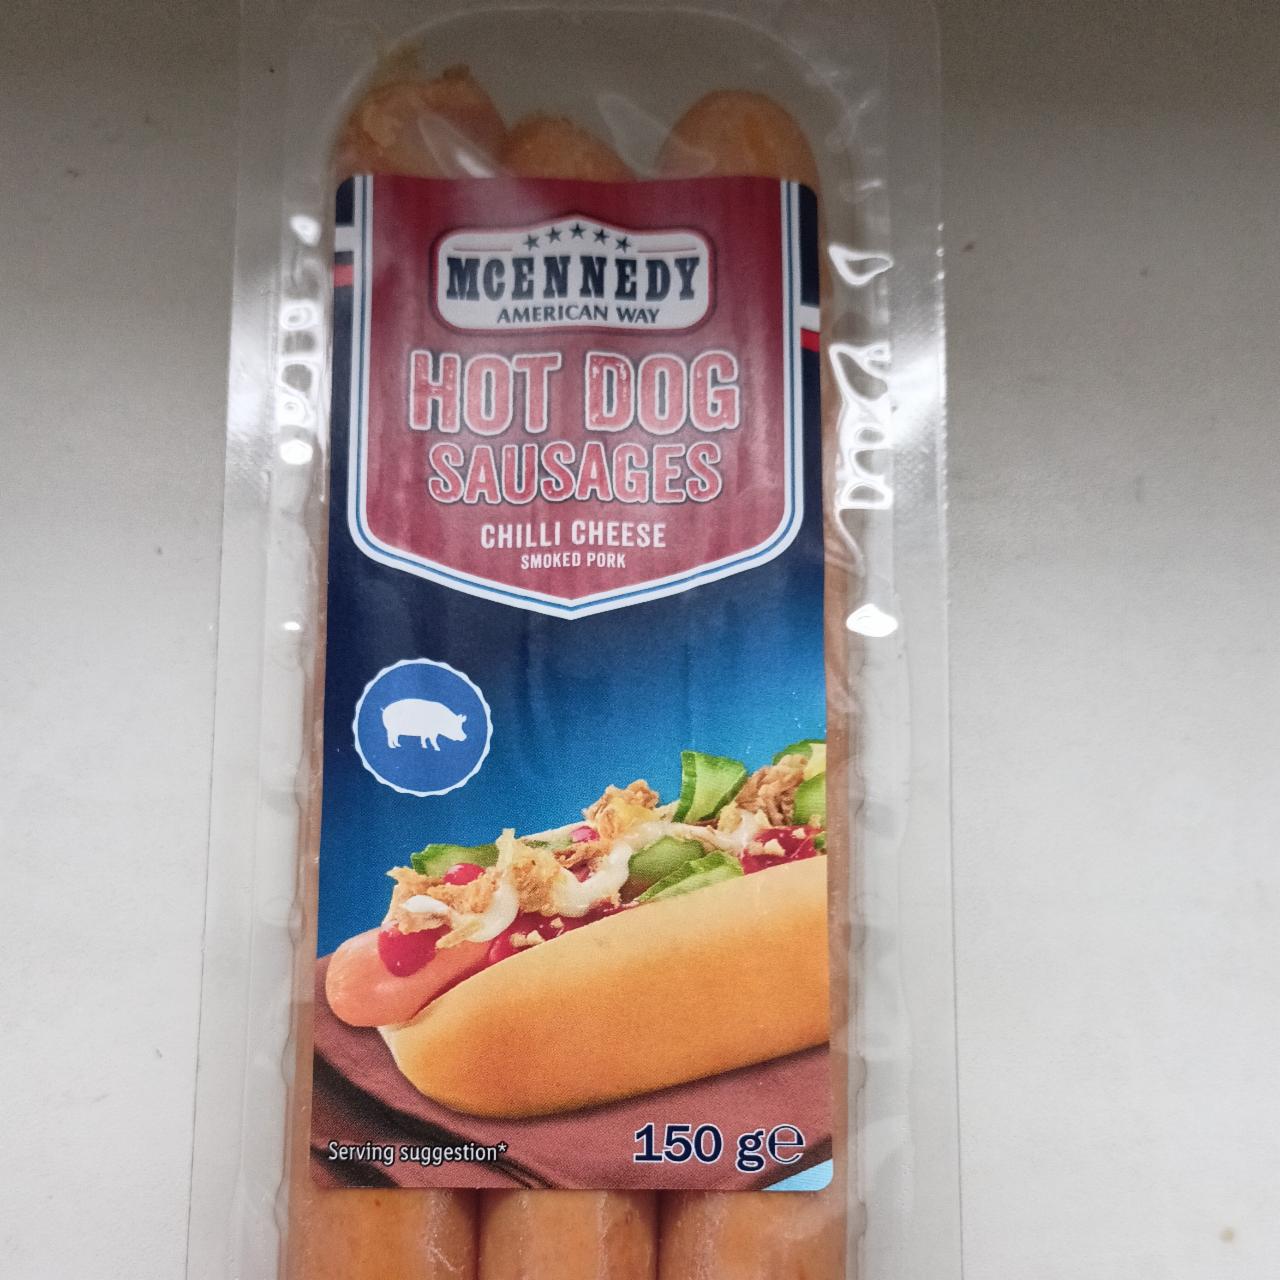 Hot dog Suasages - Way cheese kJ McEnnedy Chilli hodnoty nutriční American a kalorie